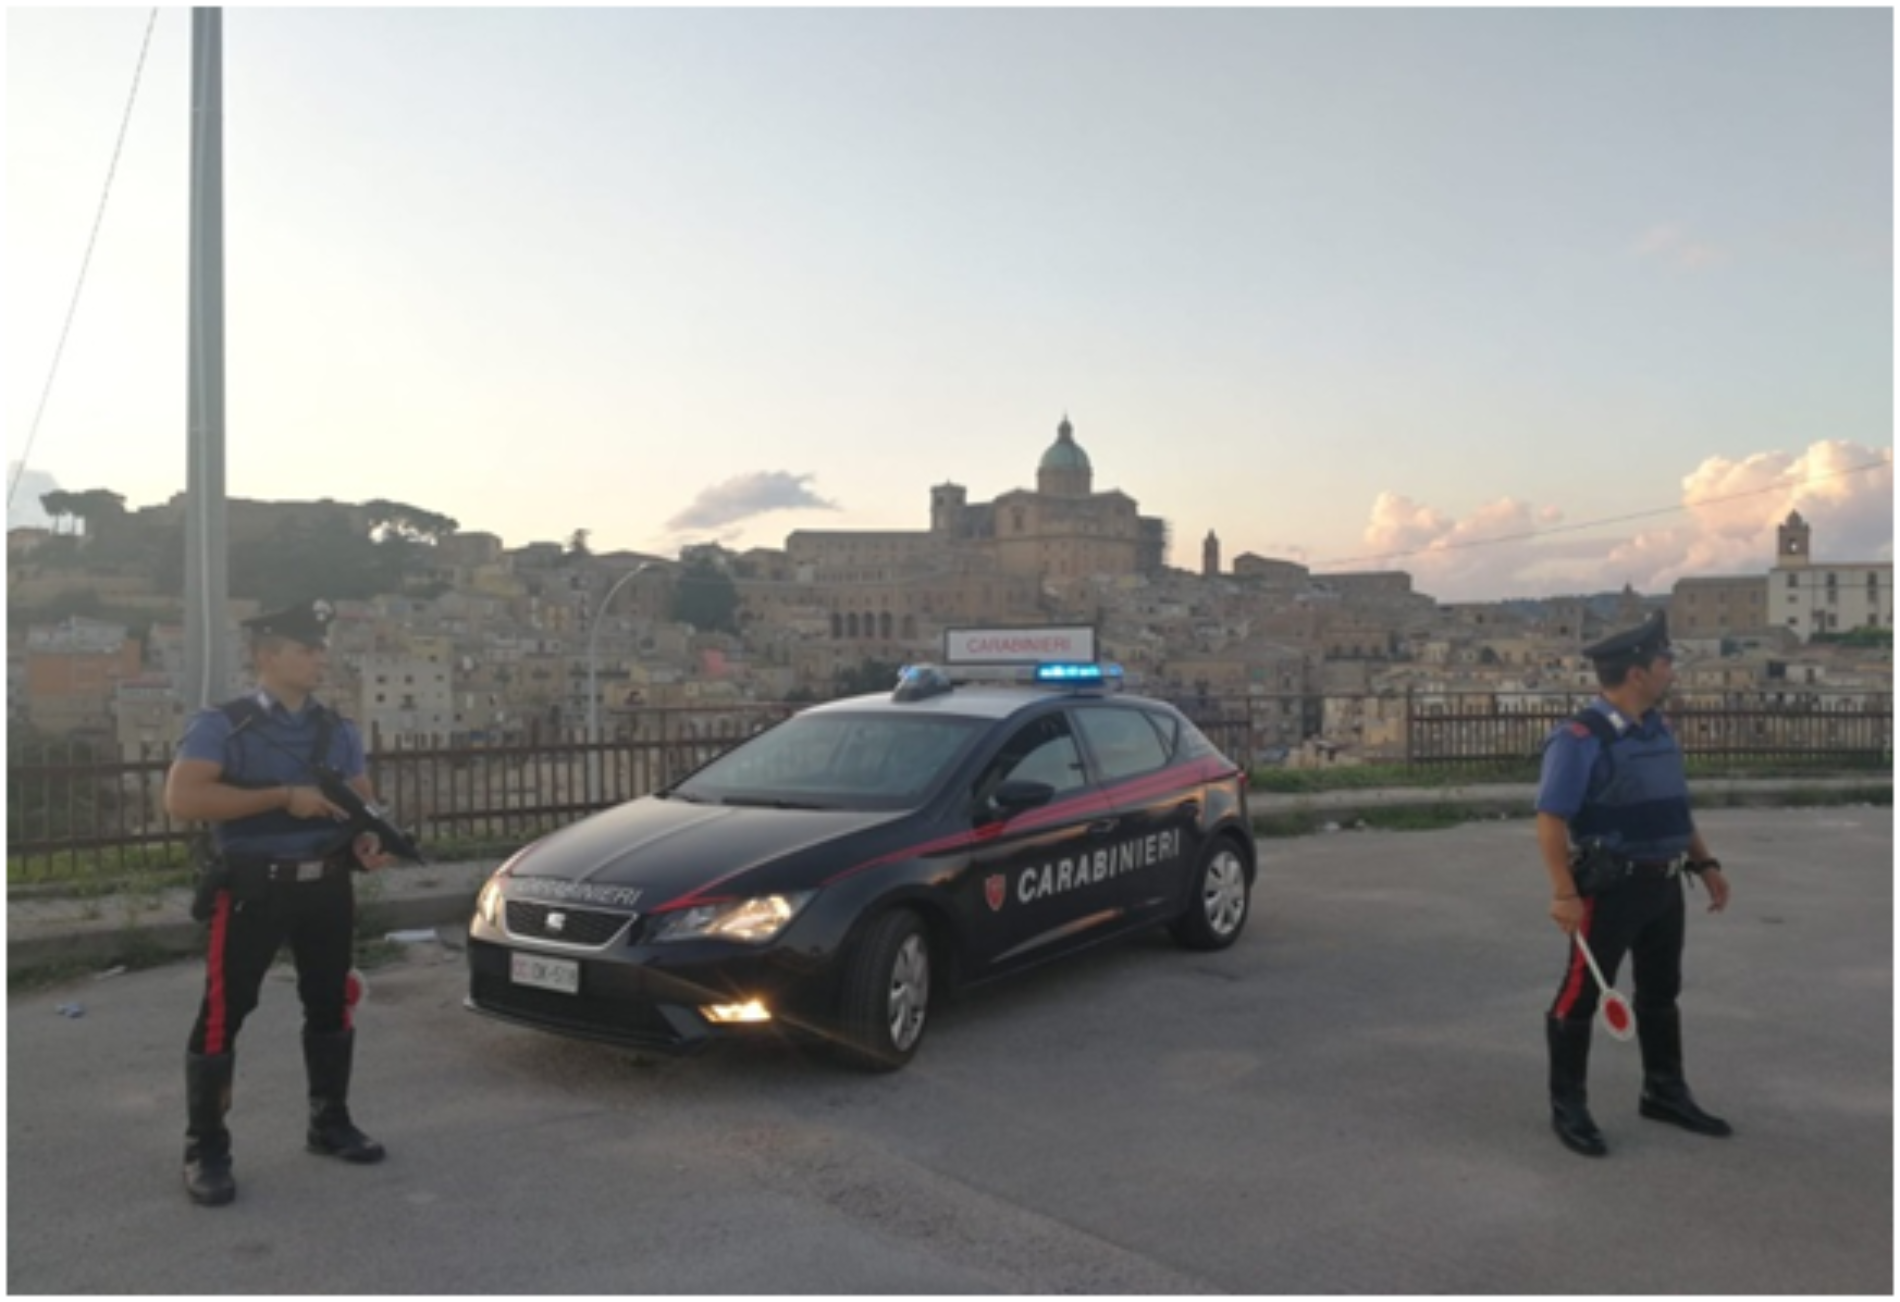 PIAZZA ARMERINA. Piazzese denunciato dai carabinieri per guida in stato di ebbrezza e per guida reiterata senza patente.